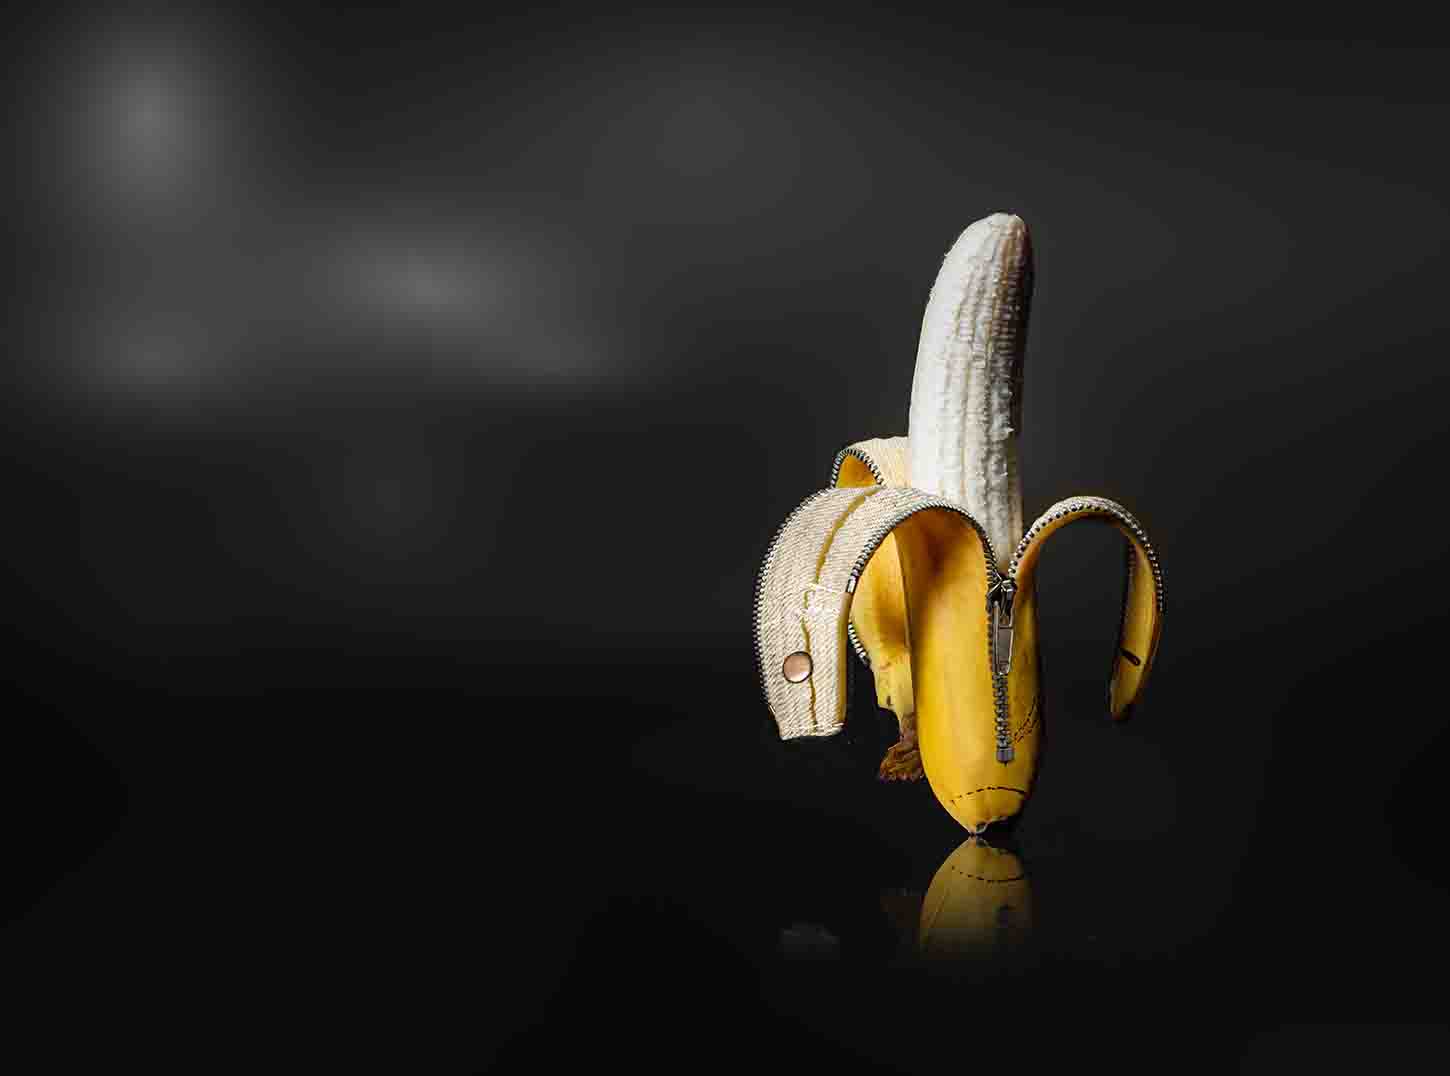 廃棄される「バナナ」と「マンゴー」から作り出されるレザー製品